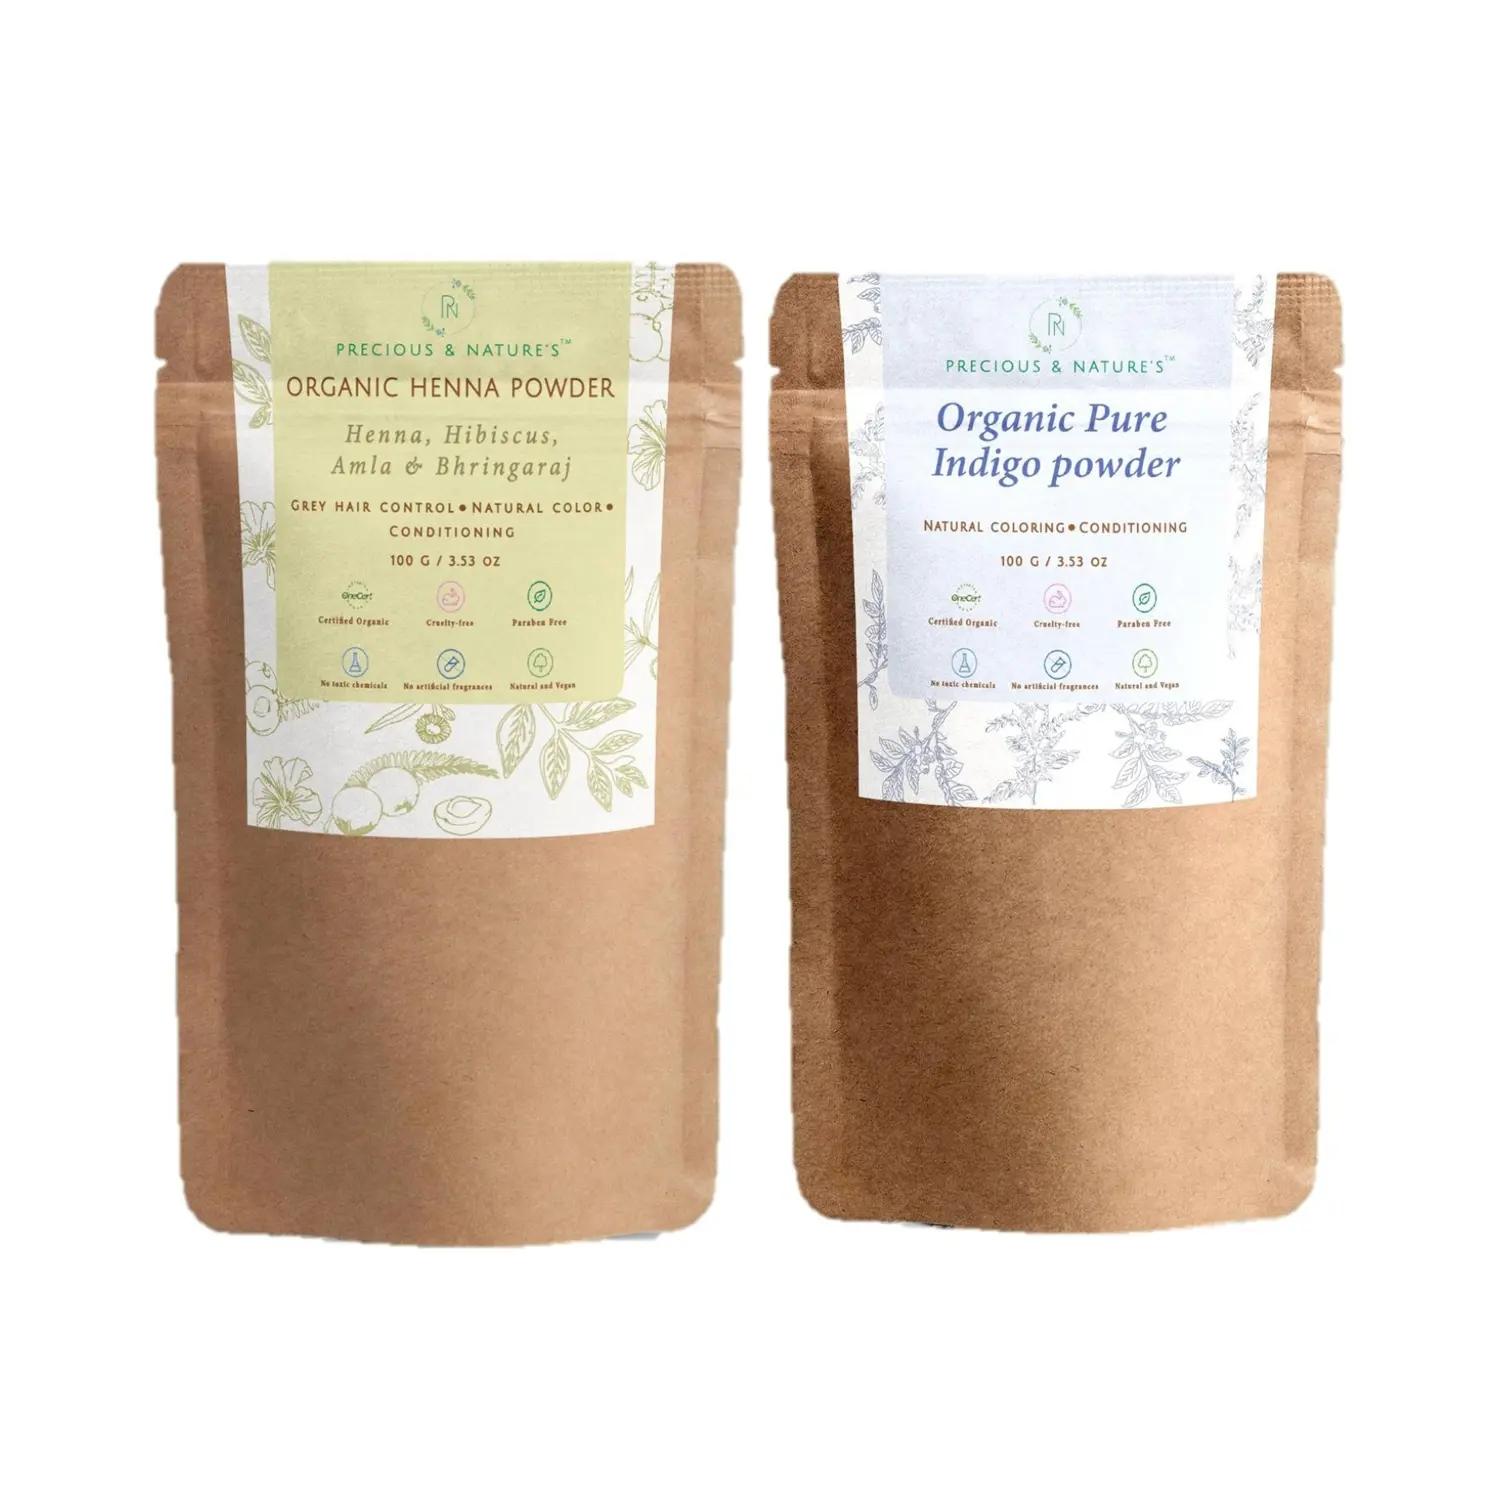 precious & nature's organic henna & indigo powder set (2pcs)